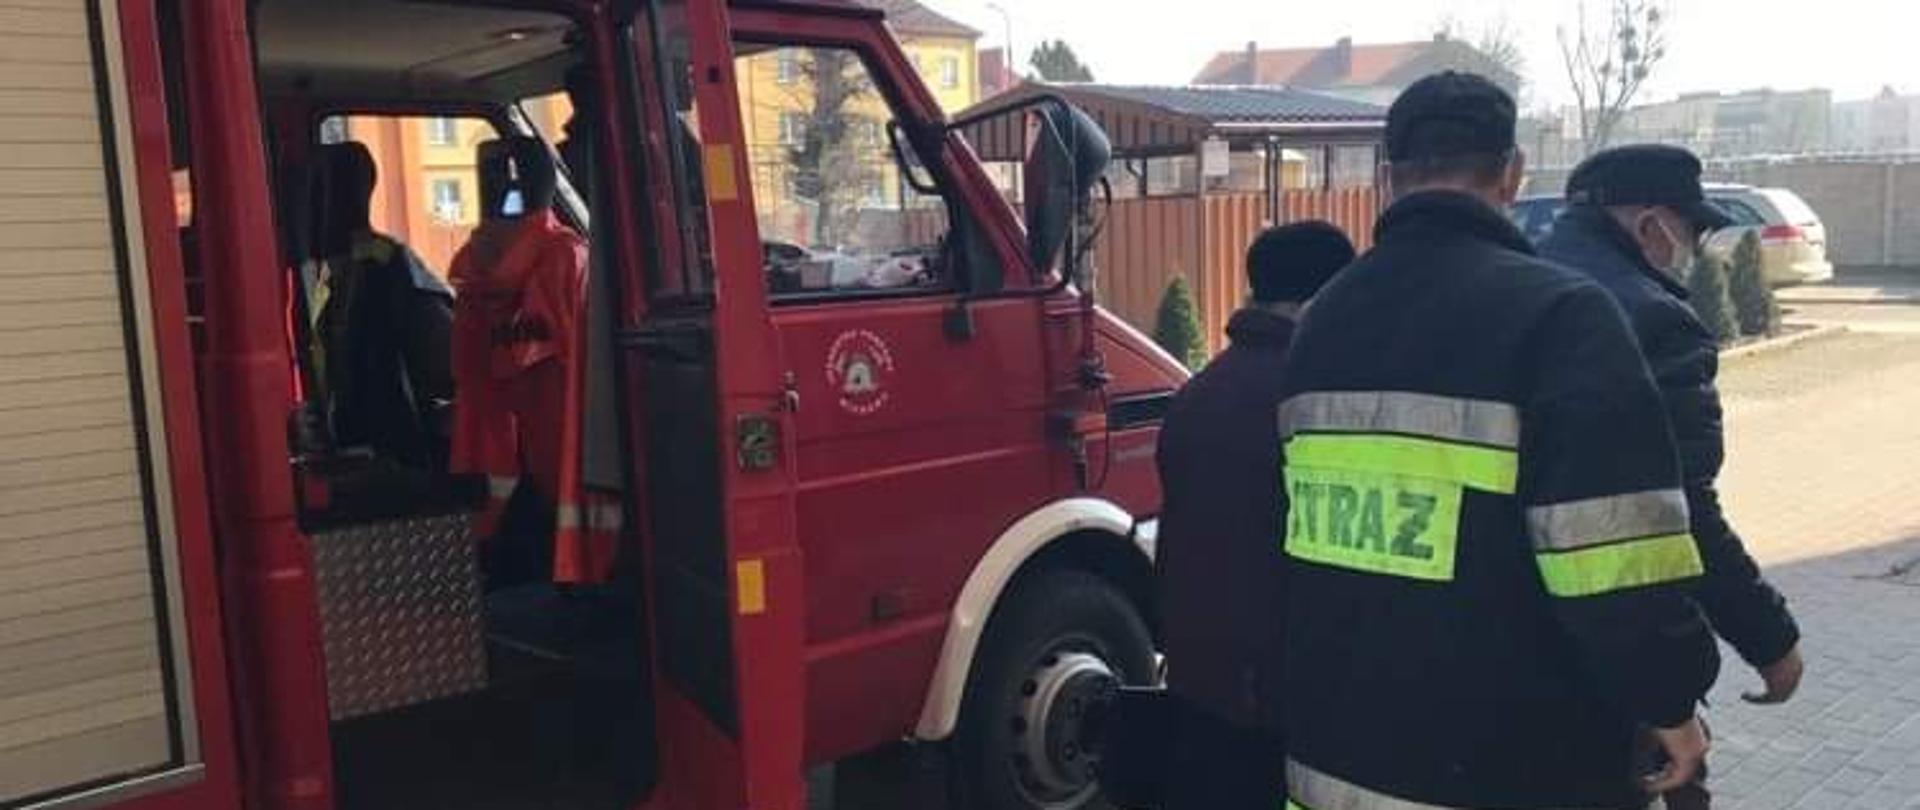 Pochmurnie. Strażak w ciemnym ubraniu pomaga wysiąść z czerwonego samochodu pożarniczego dwóm starszym osobom.